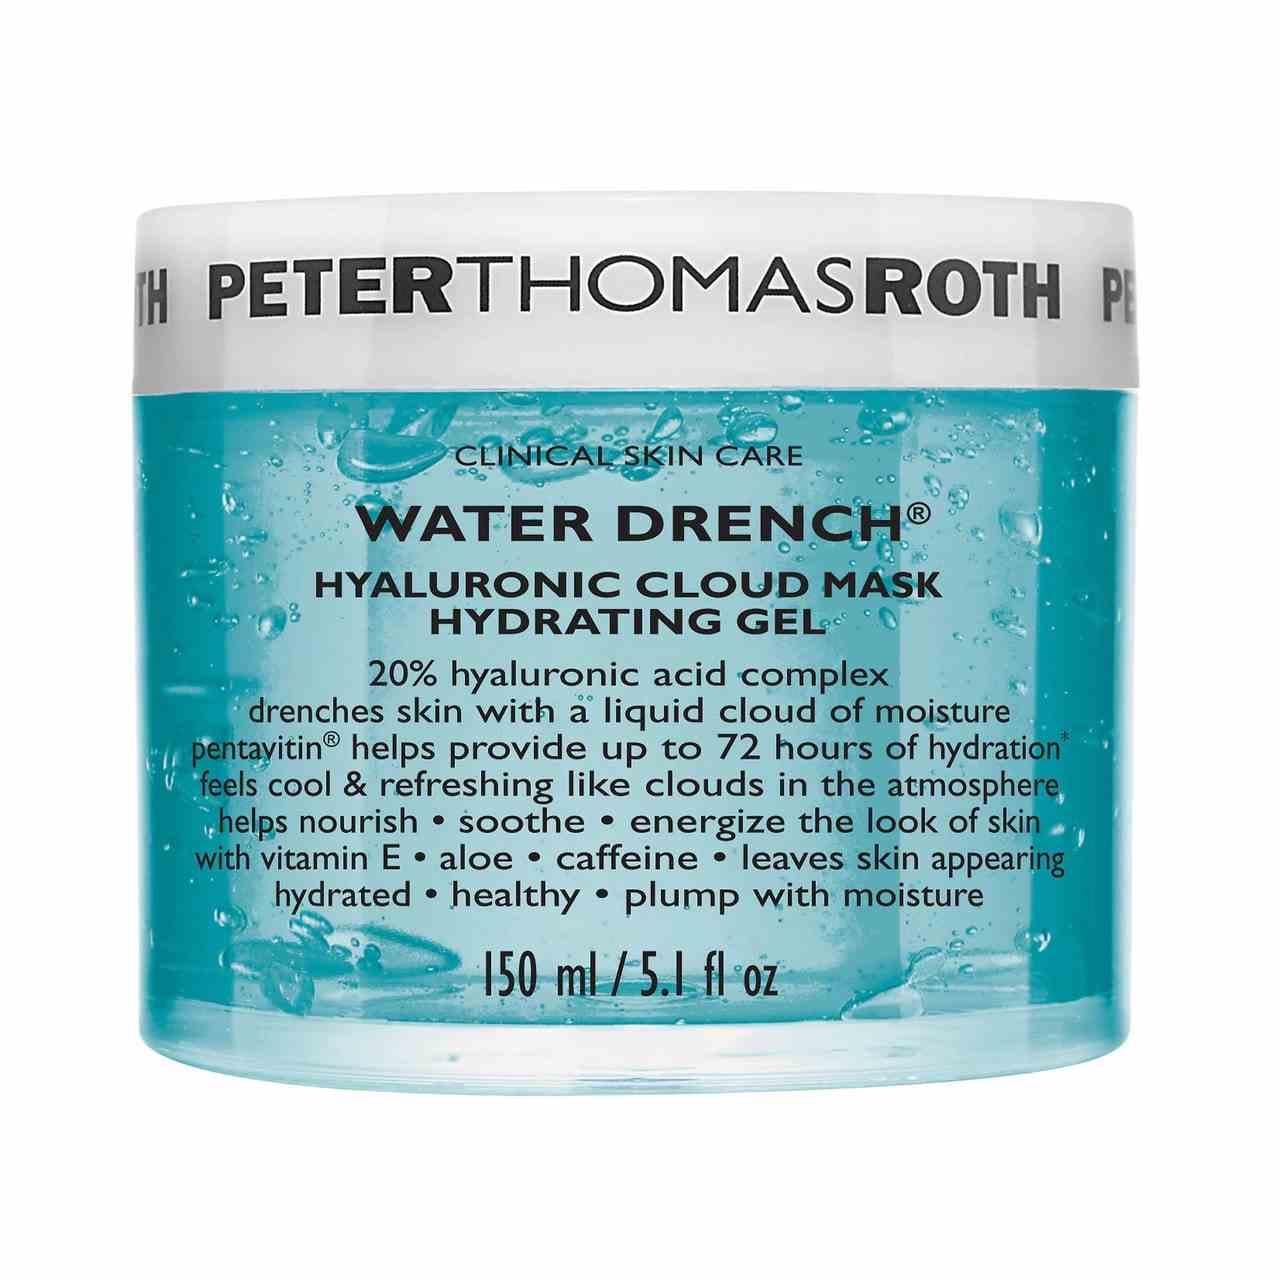 Peter Thomas Roth Water Drench Hyaluronic Cloud Mask Hydrating Gel blaue Dose mit weißem Deckel auf weißem Hintergrund